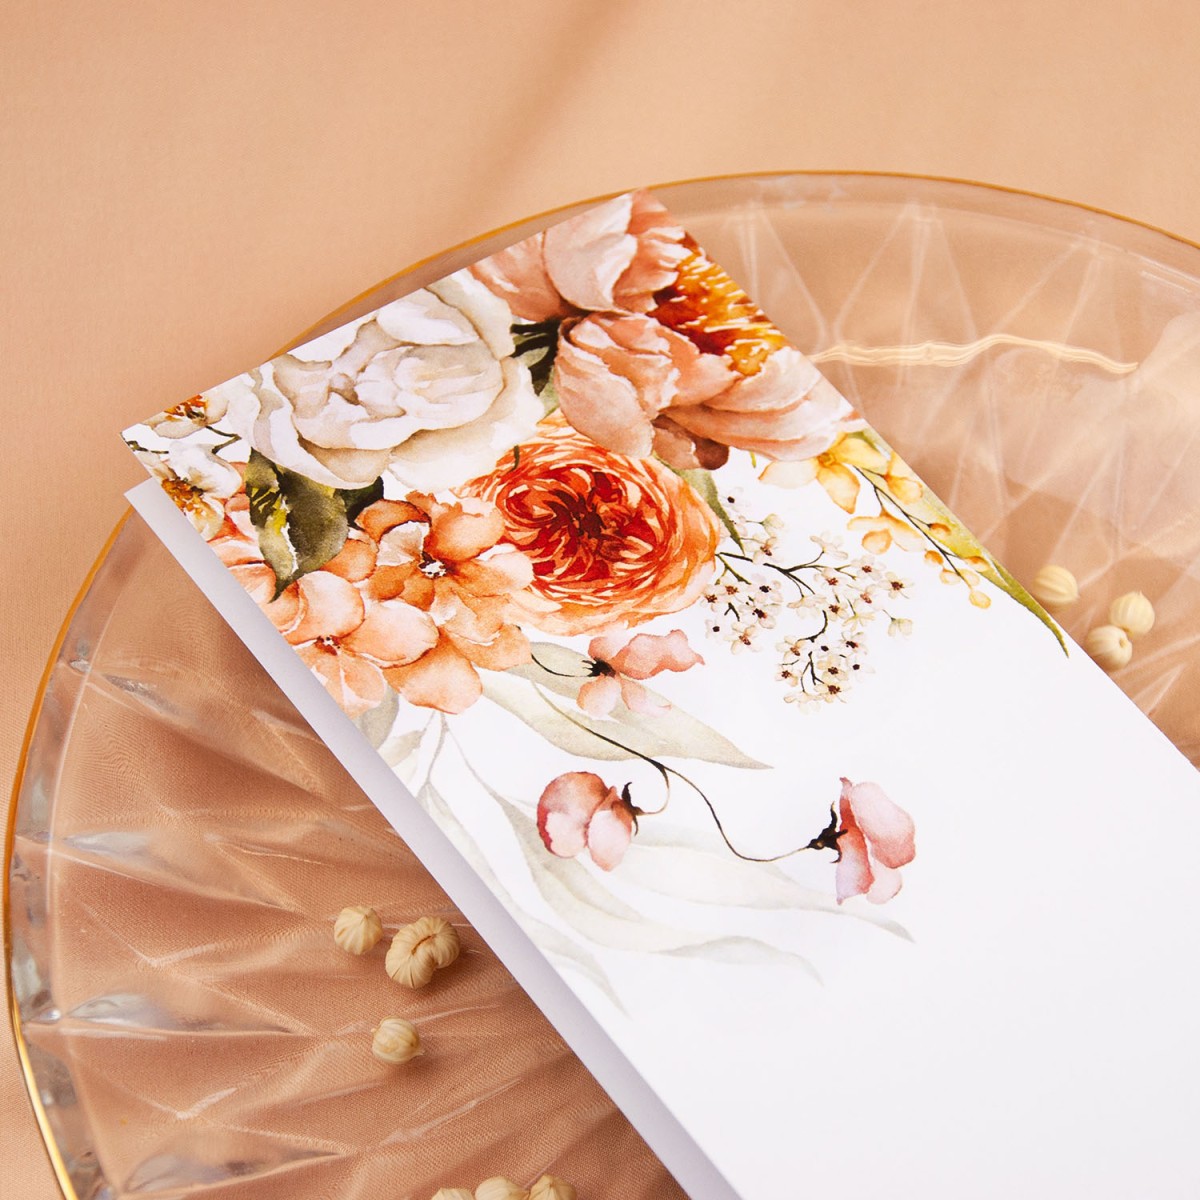 Otwierane menu weselne z motywami beżowych i różowych kwiatów - Beige Roses